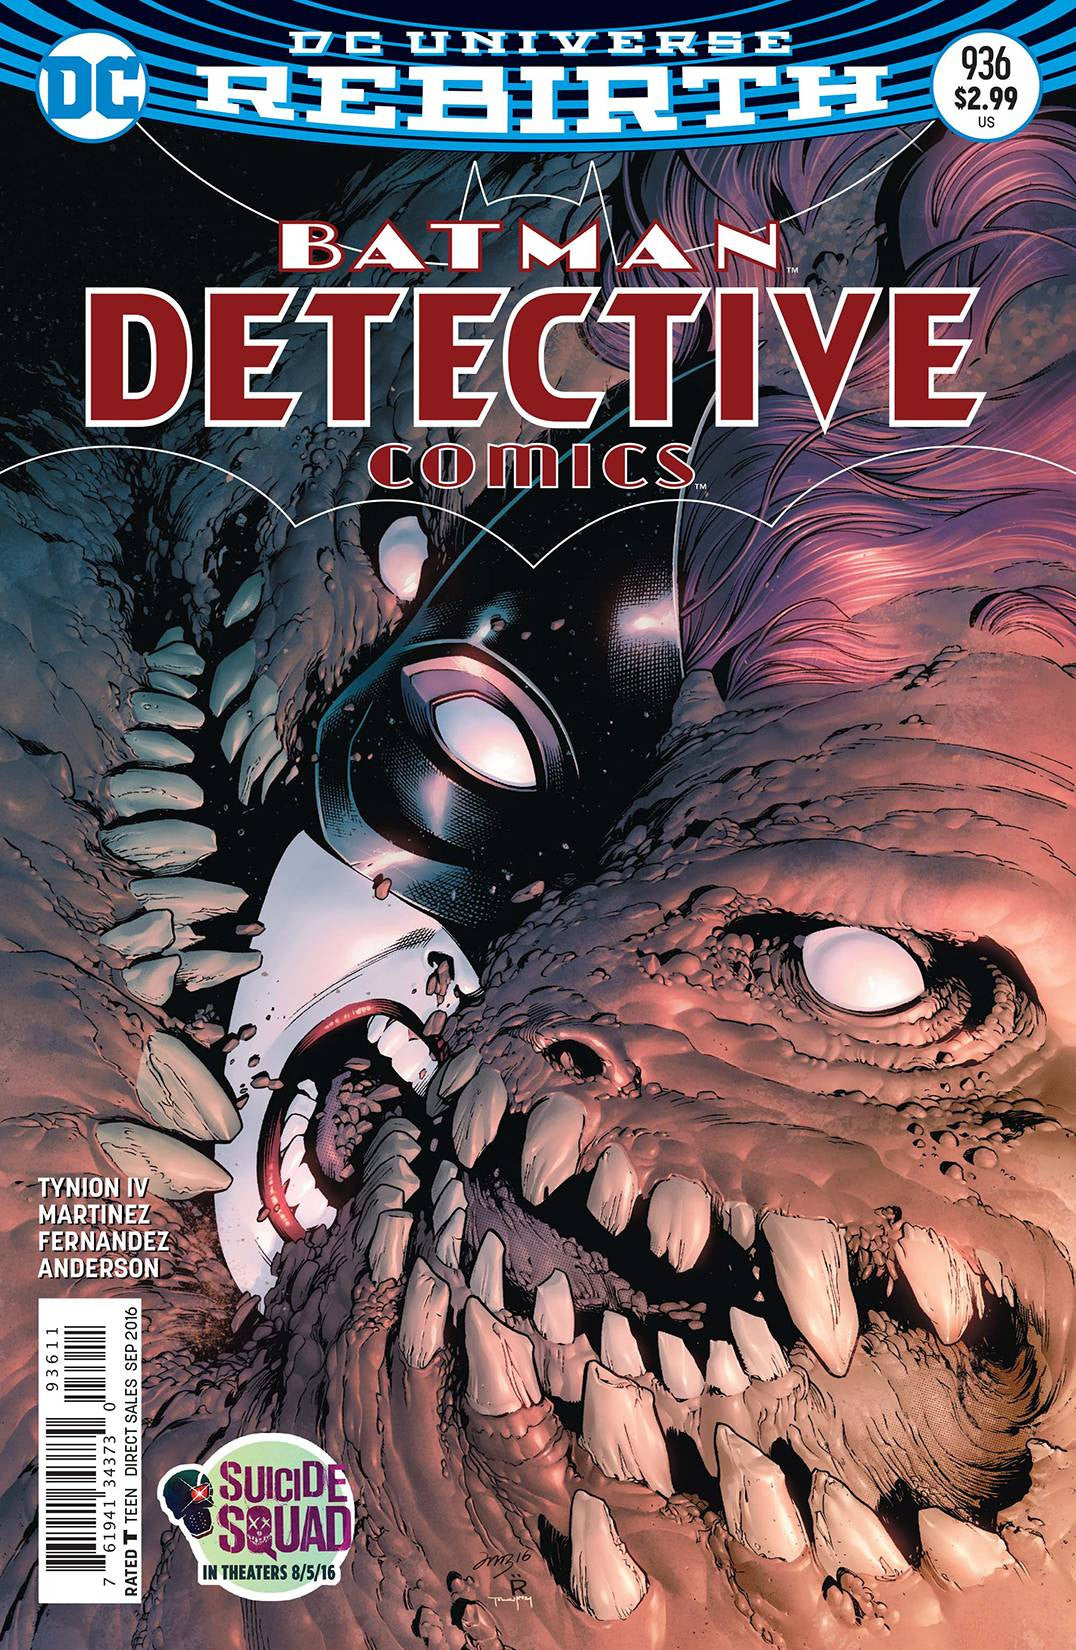 DETECTIVE COMICS #937 COVER